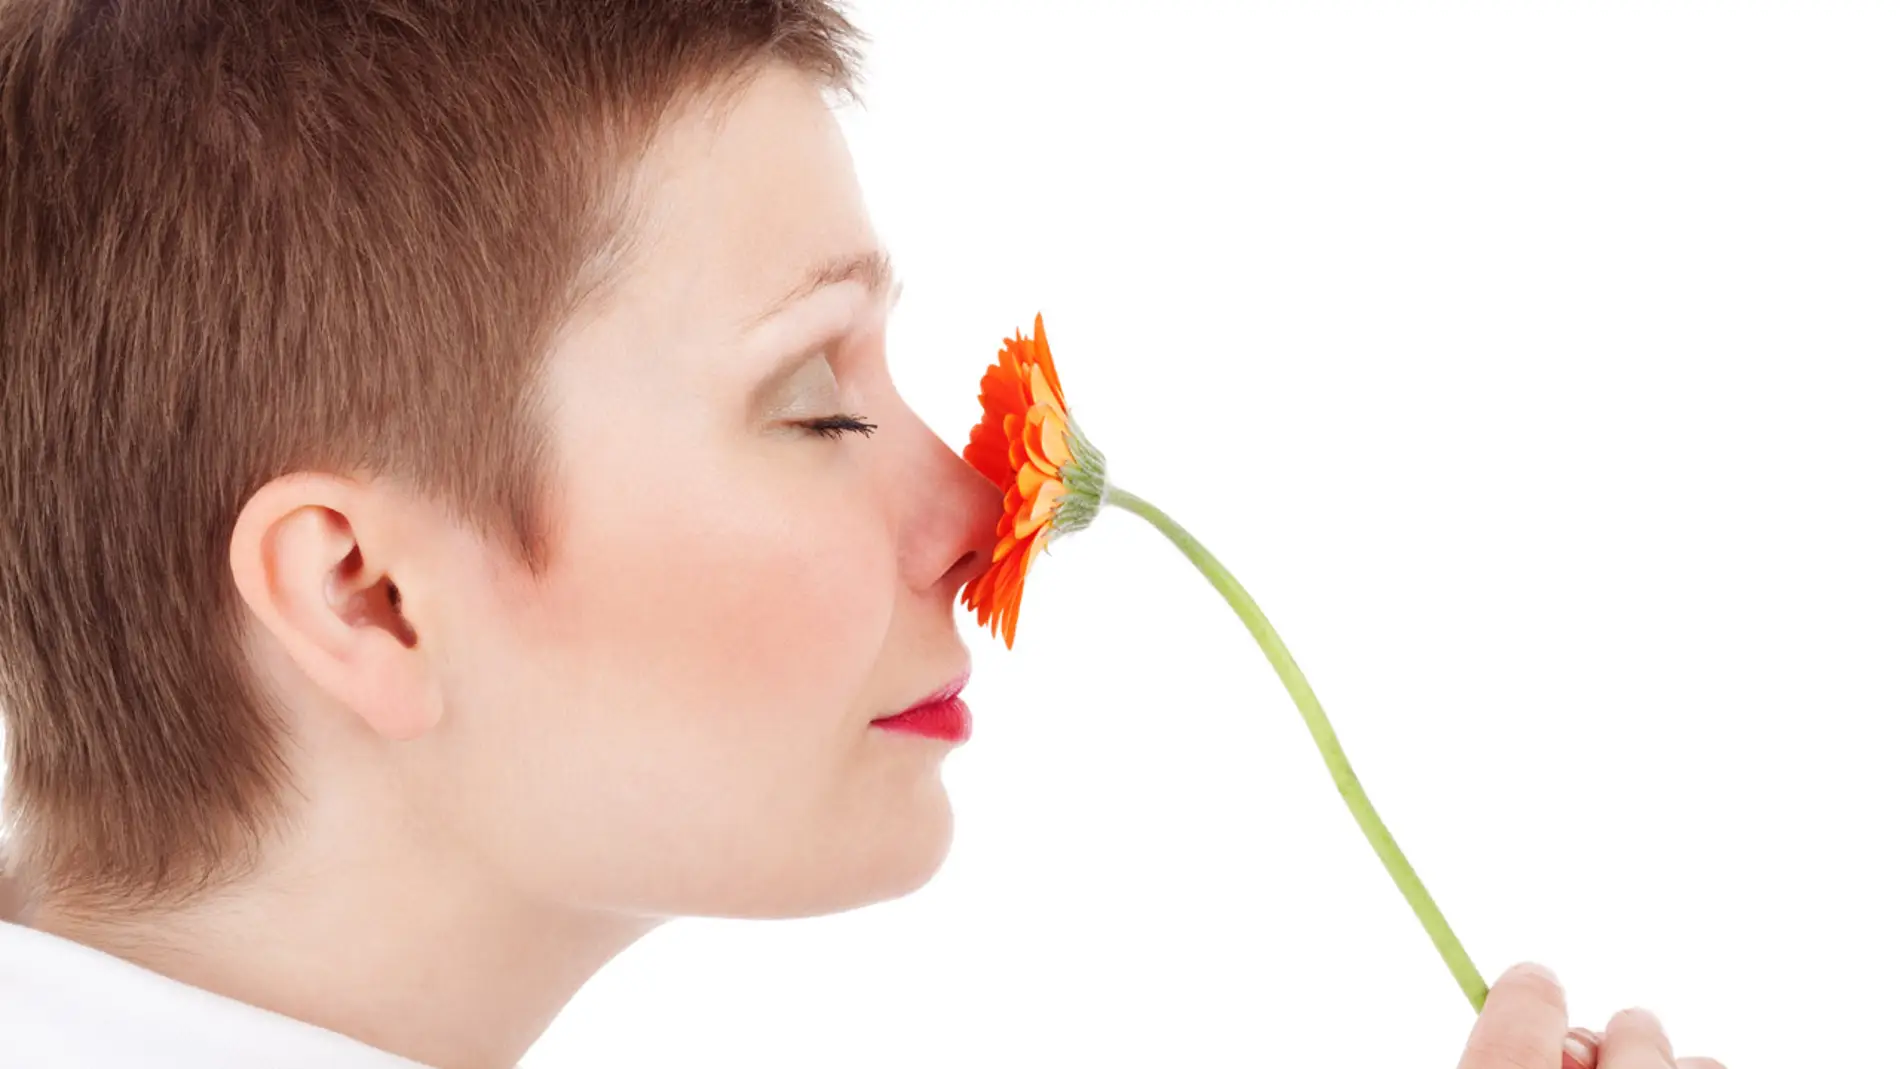 Los hiperósmicos son capaces de distinguir el olor de una flor entre la basura